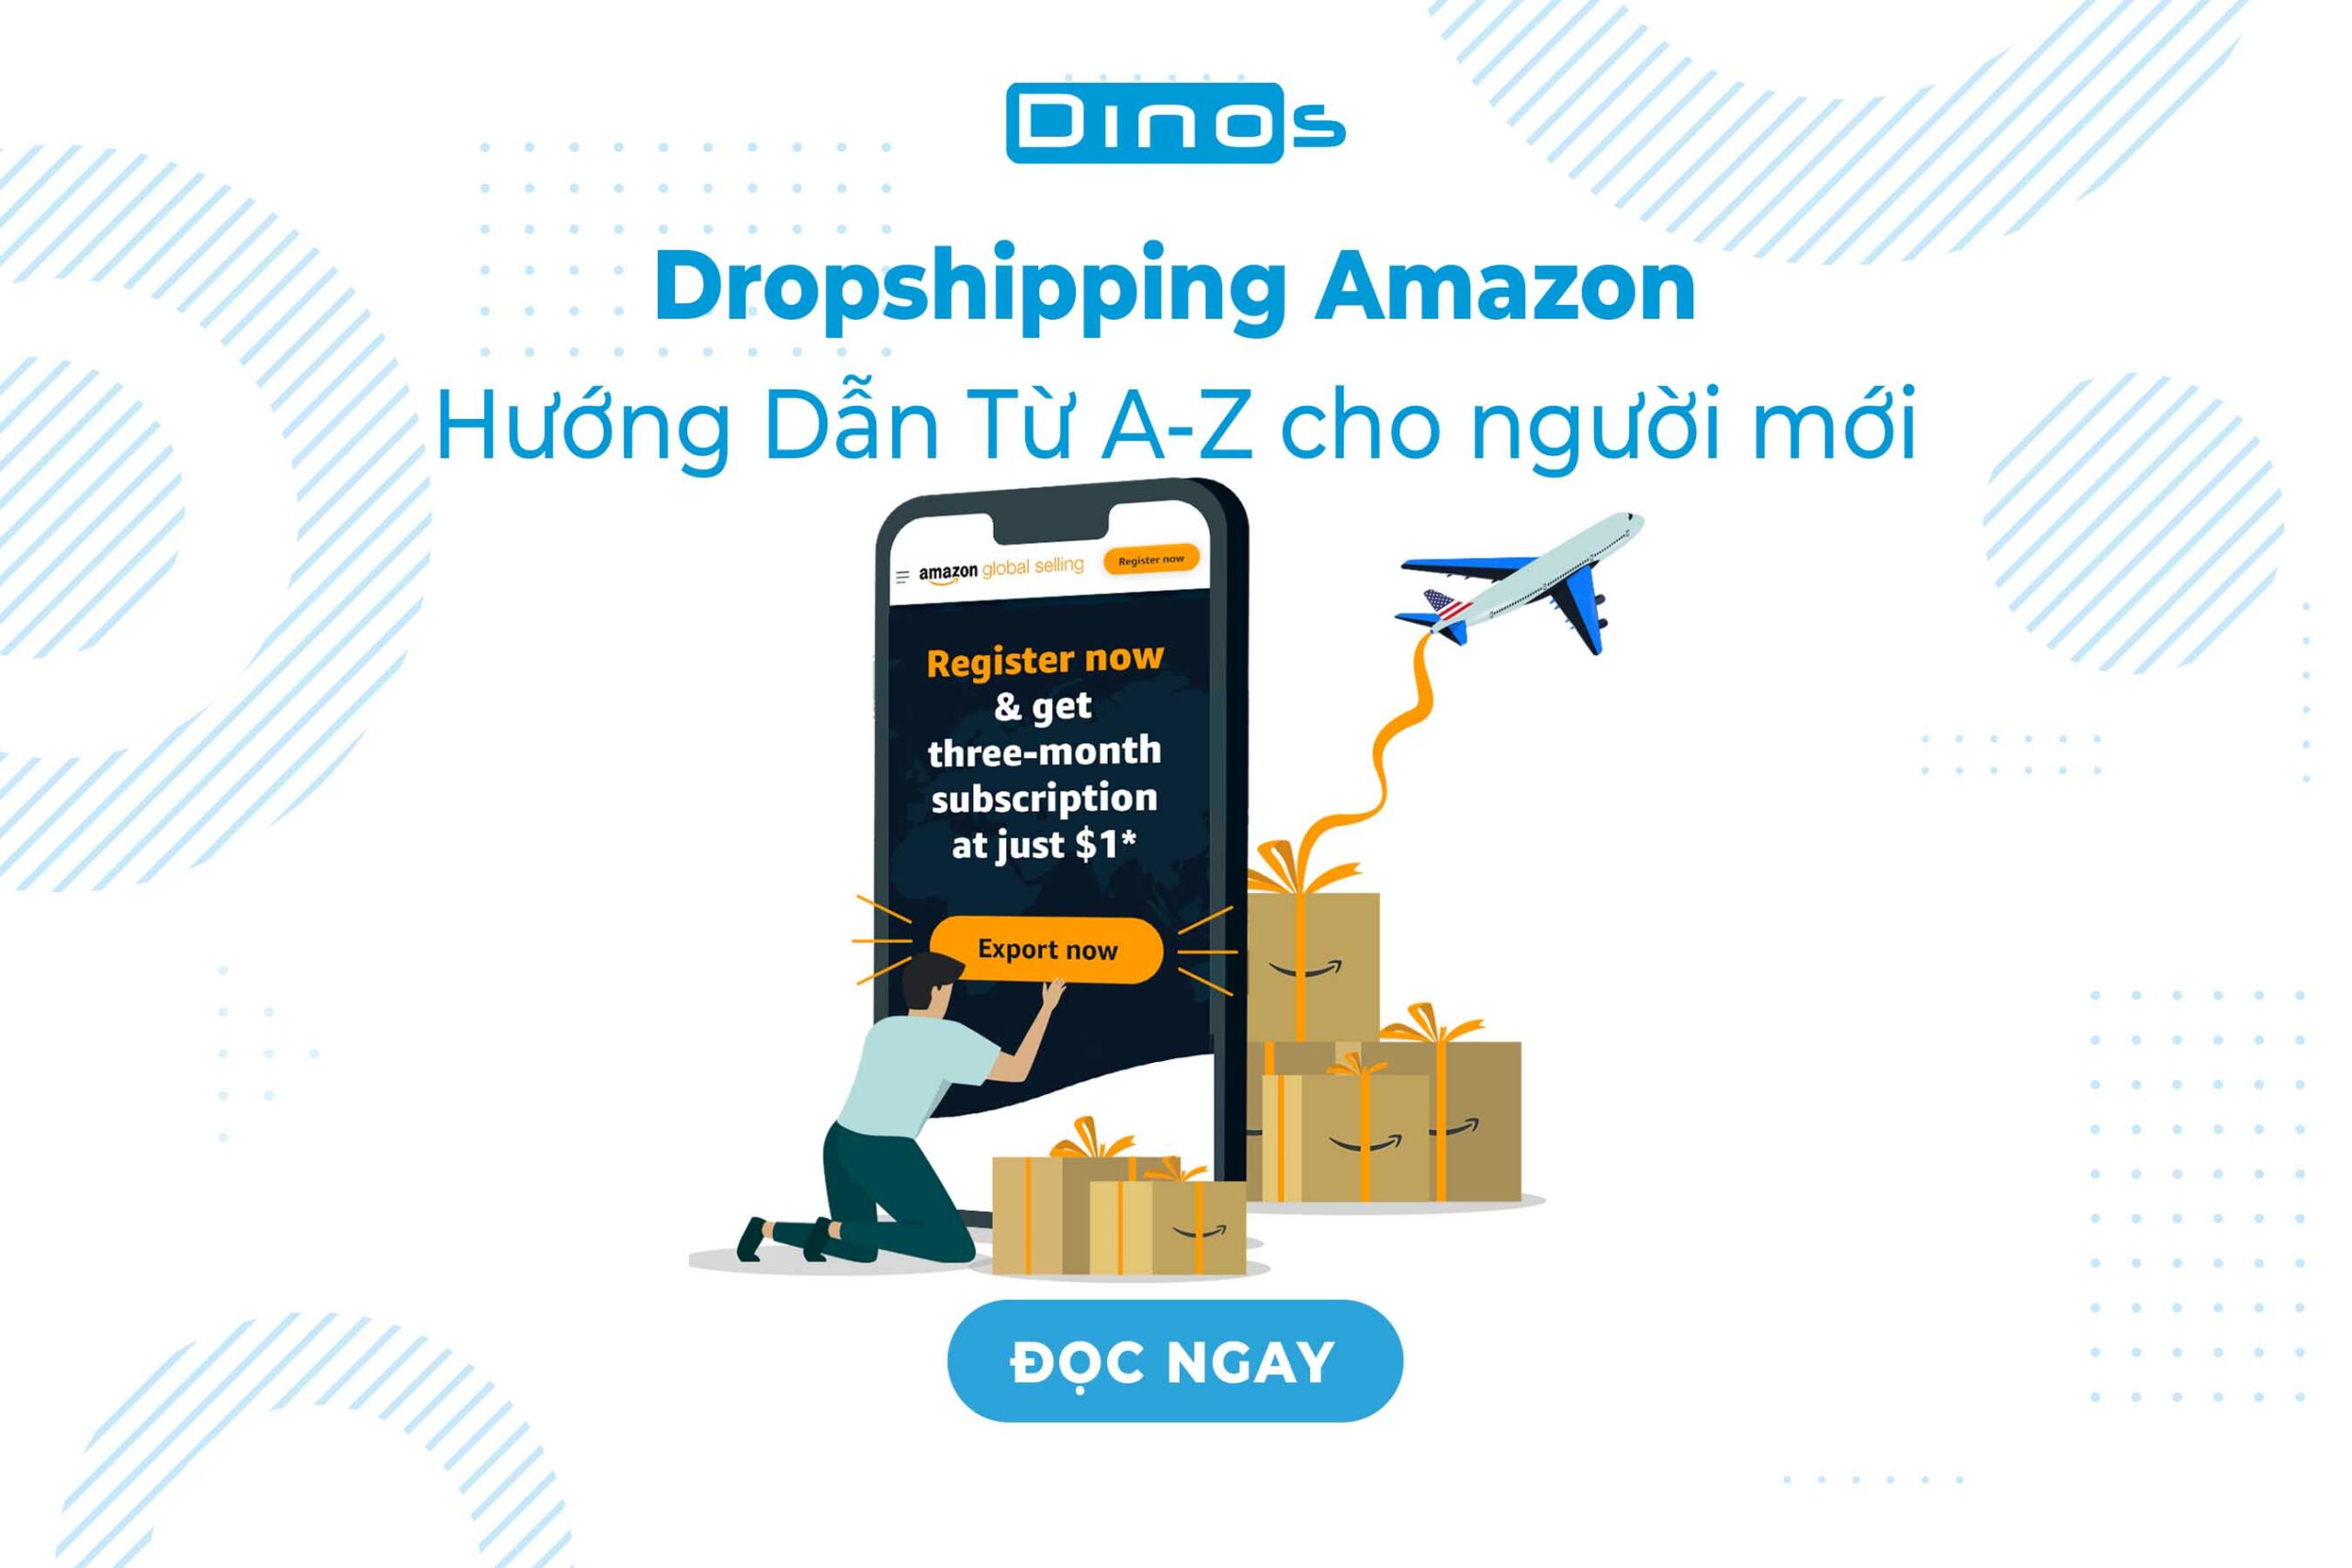 Dropshipping Amazon – Hướng Dẫn Từ A-Z cho người mới